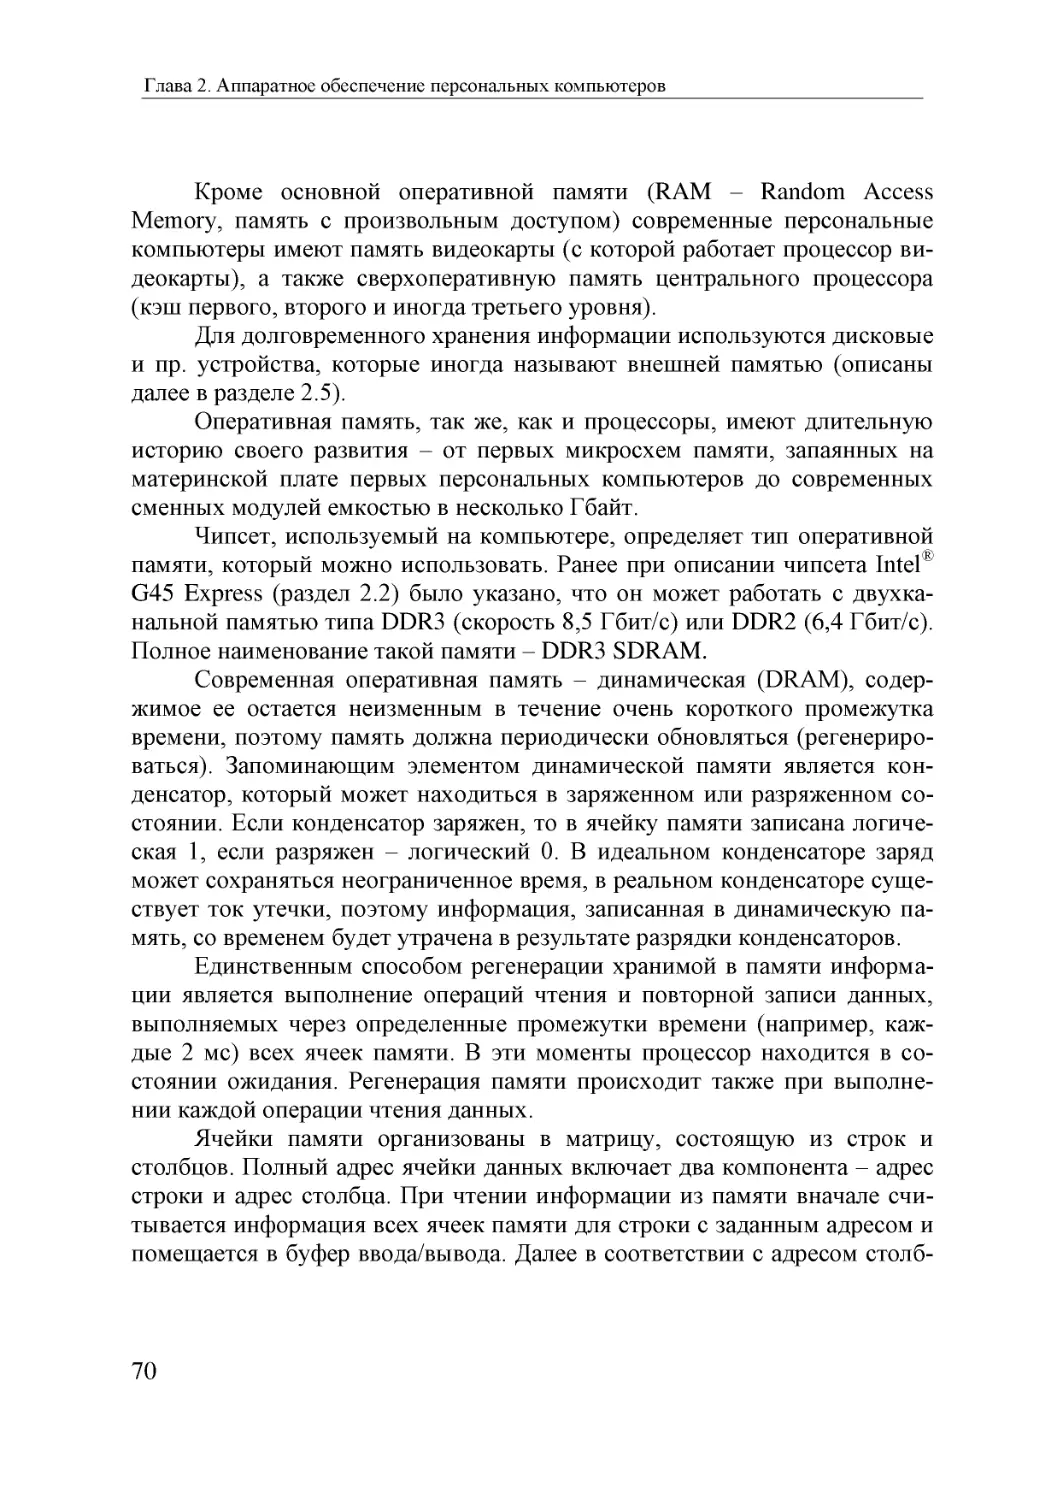 Informatika_Uchebnik_dlya_vuzov_2010 70